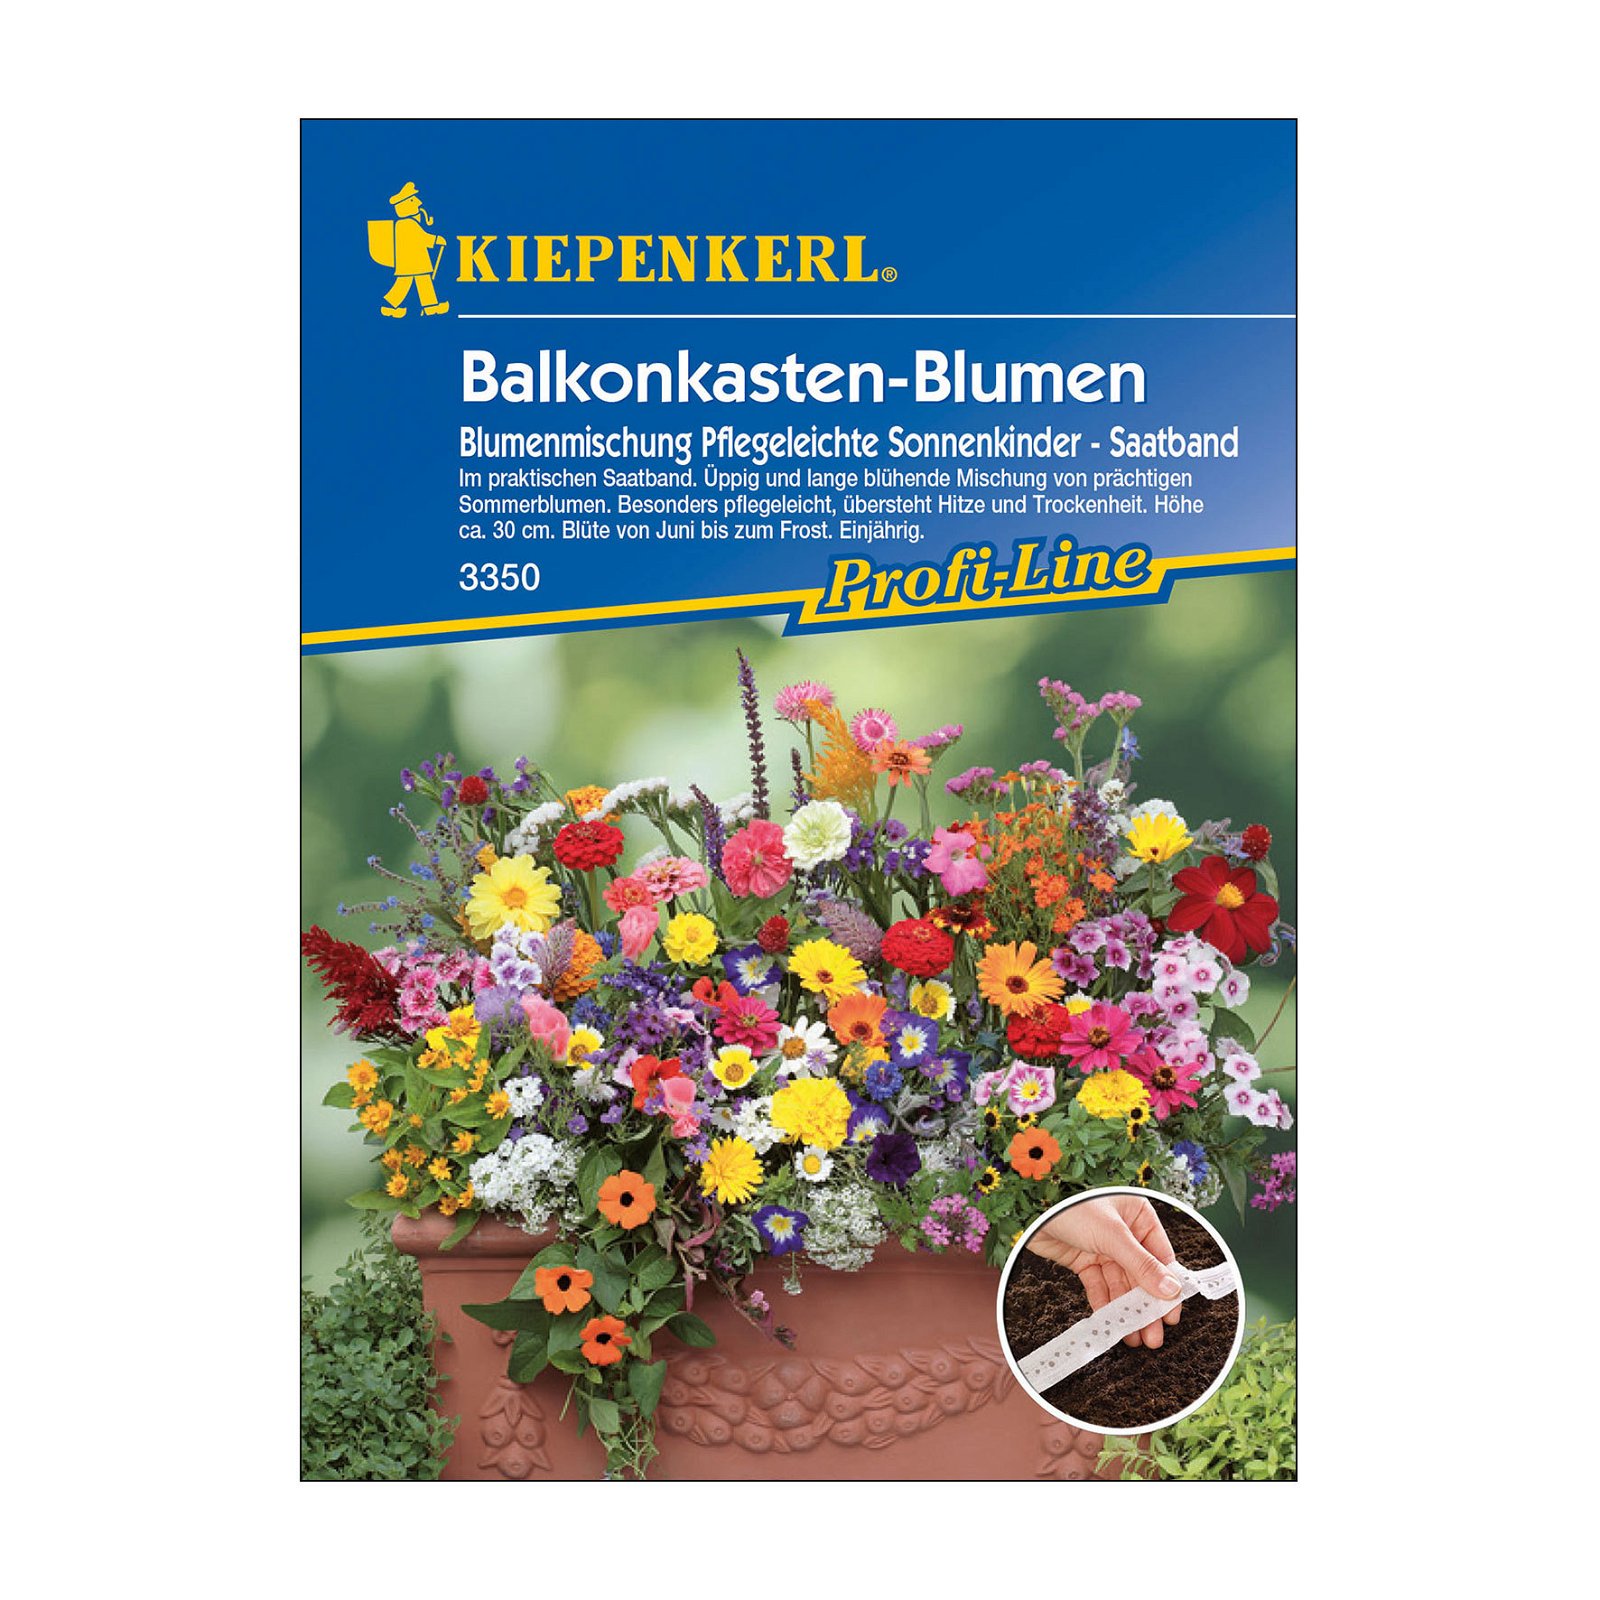 Blumensamen-Saatband, Balkonkastenblumen 'Pflegeleichte Sonnenkinder', bunt